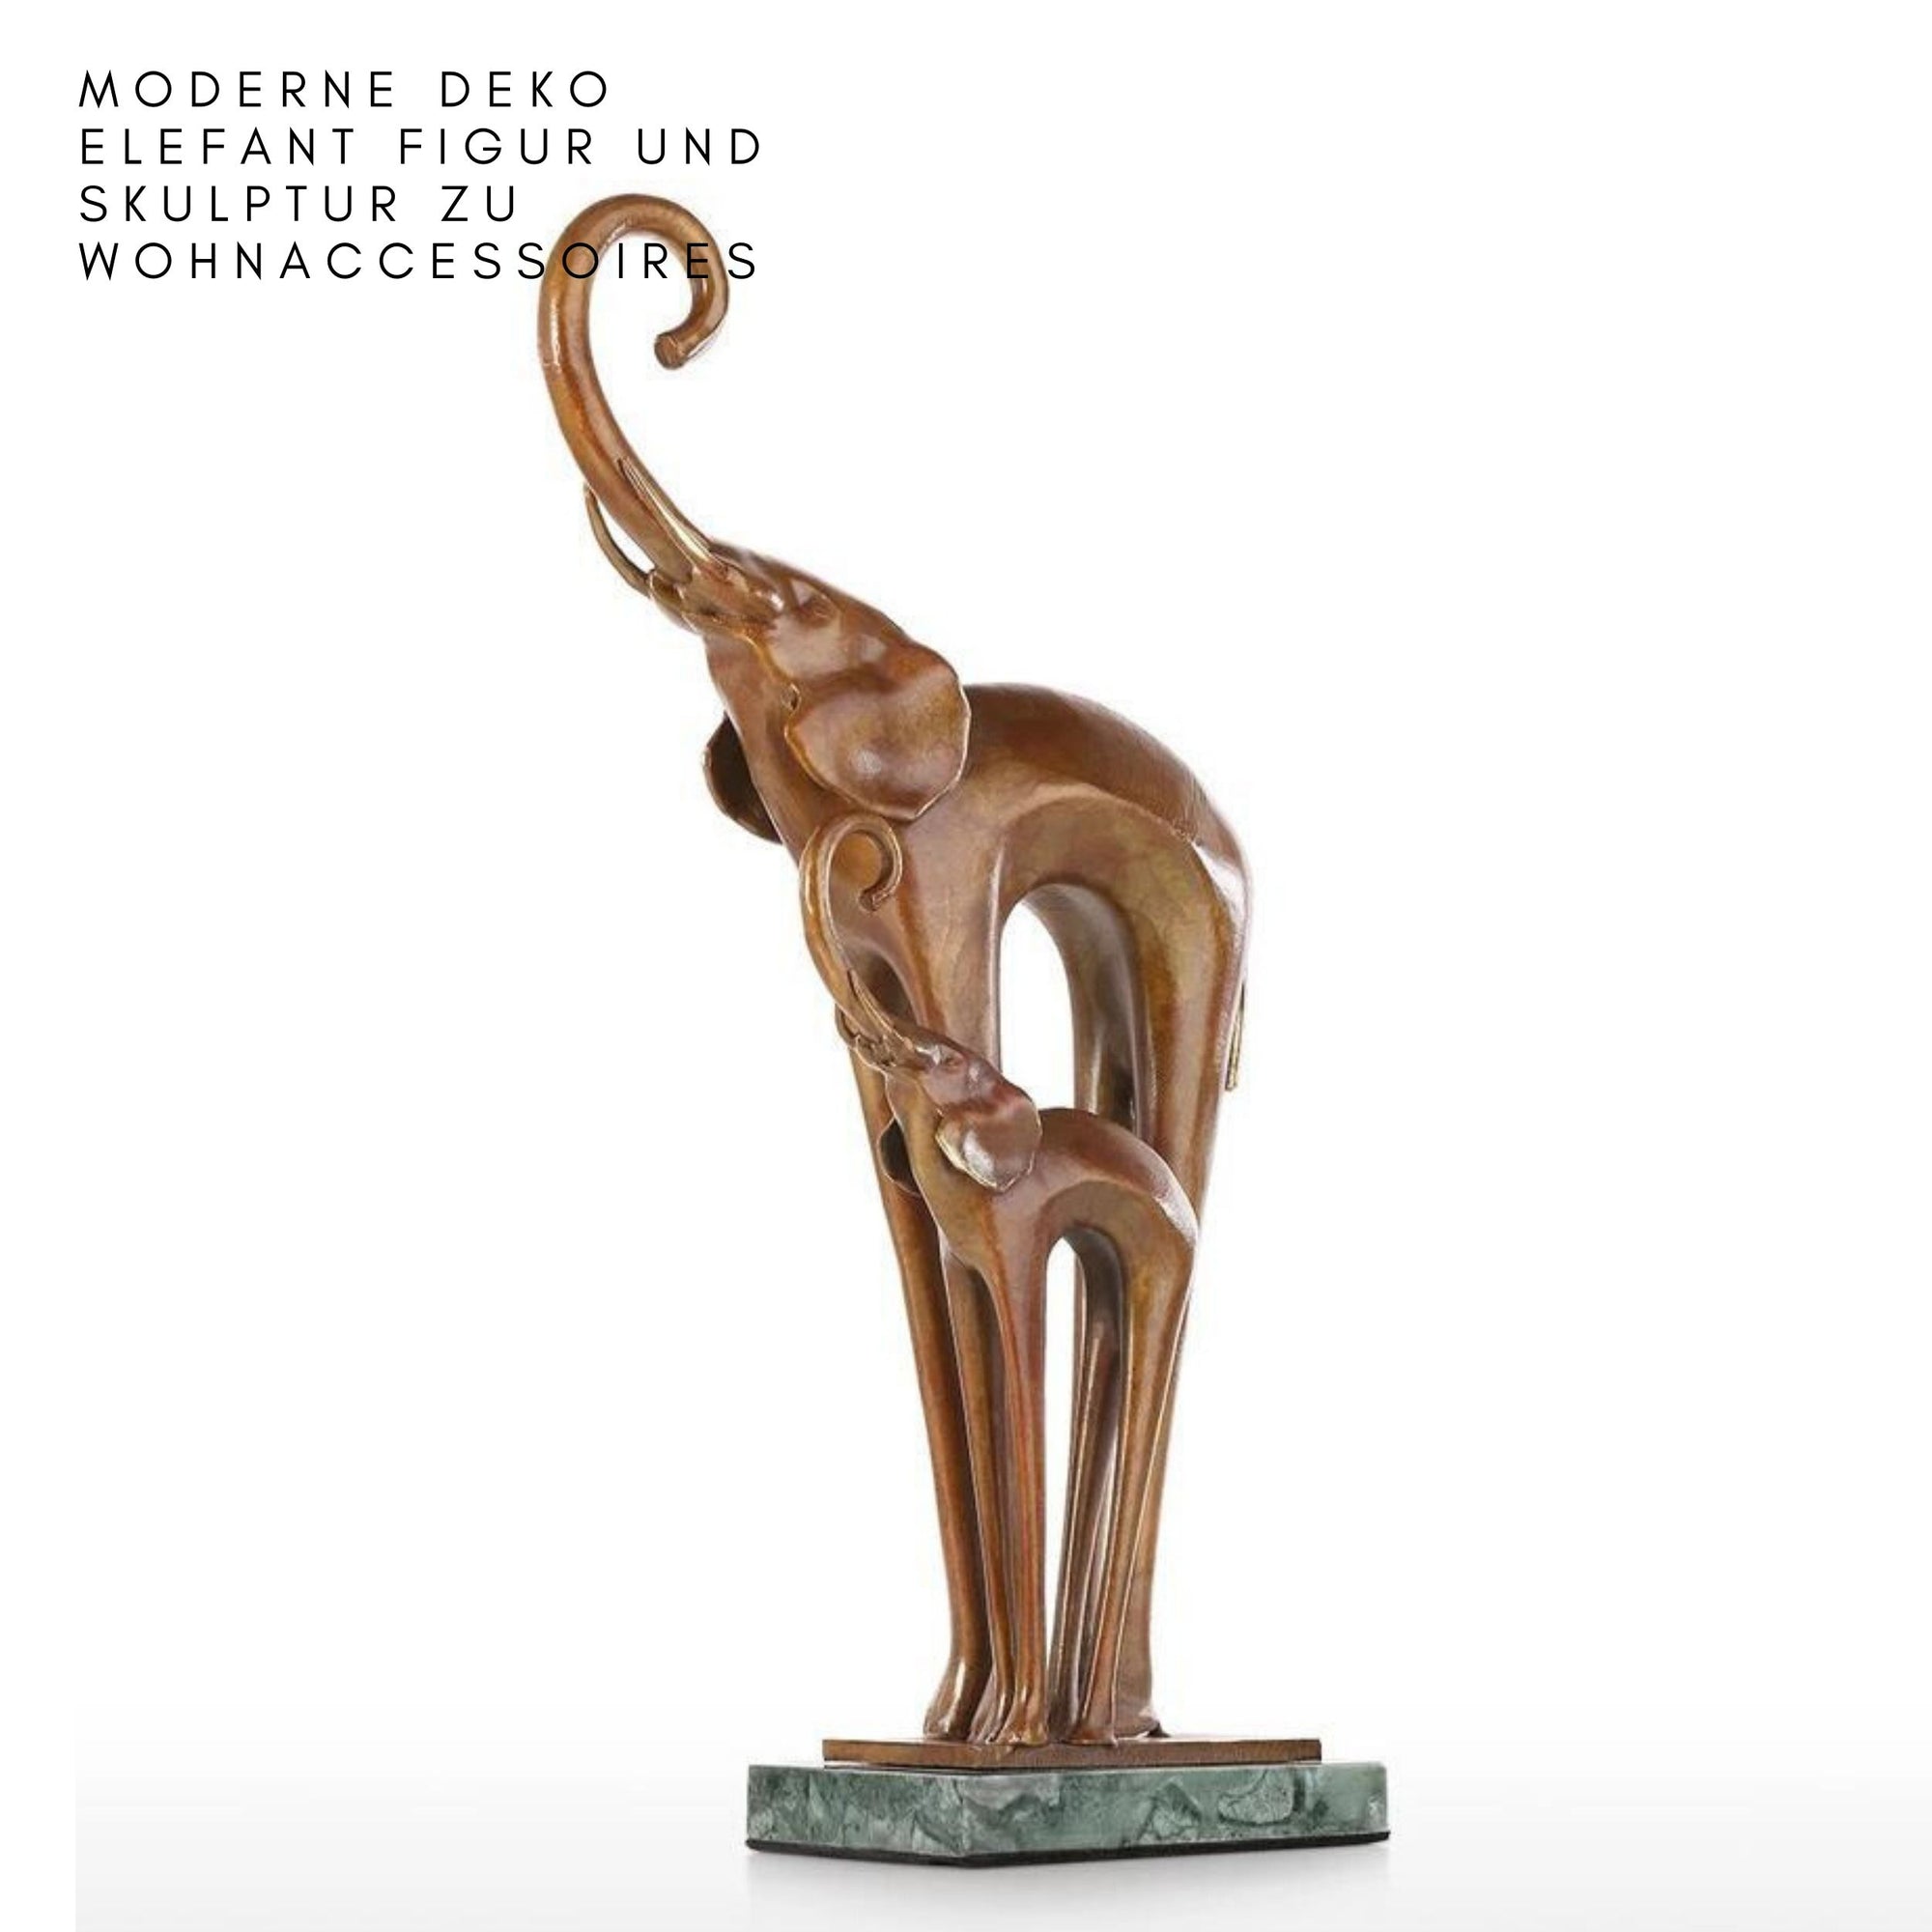 Moderne Deko Elefant Figur und Skulptur zu Wohnaccessoires